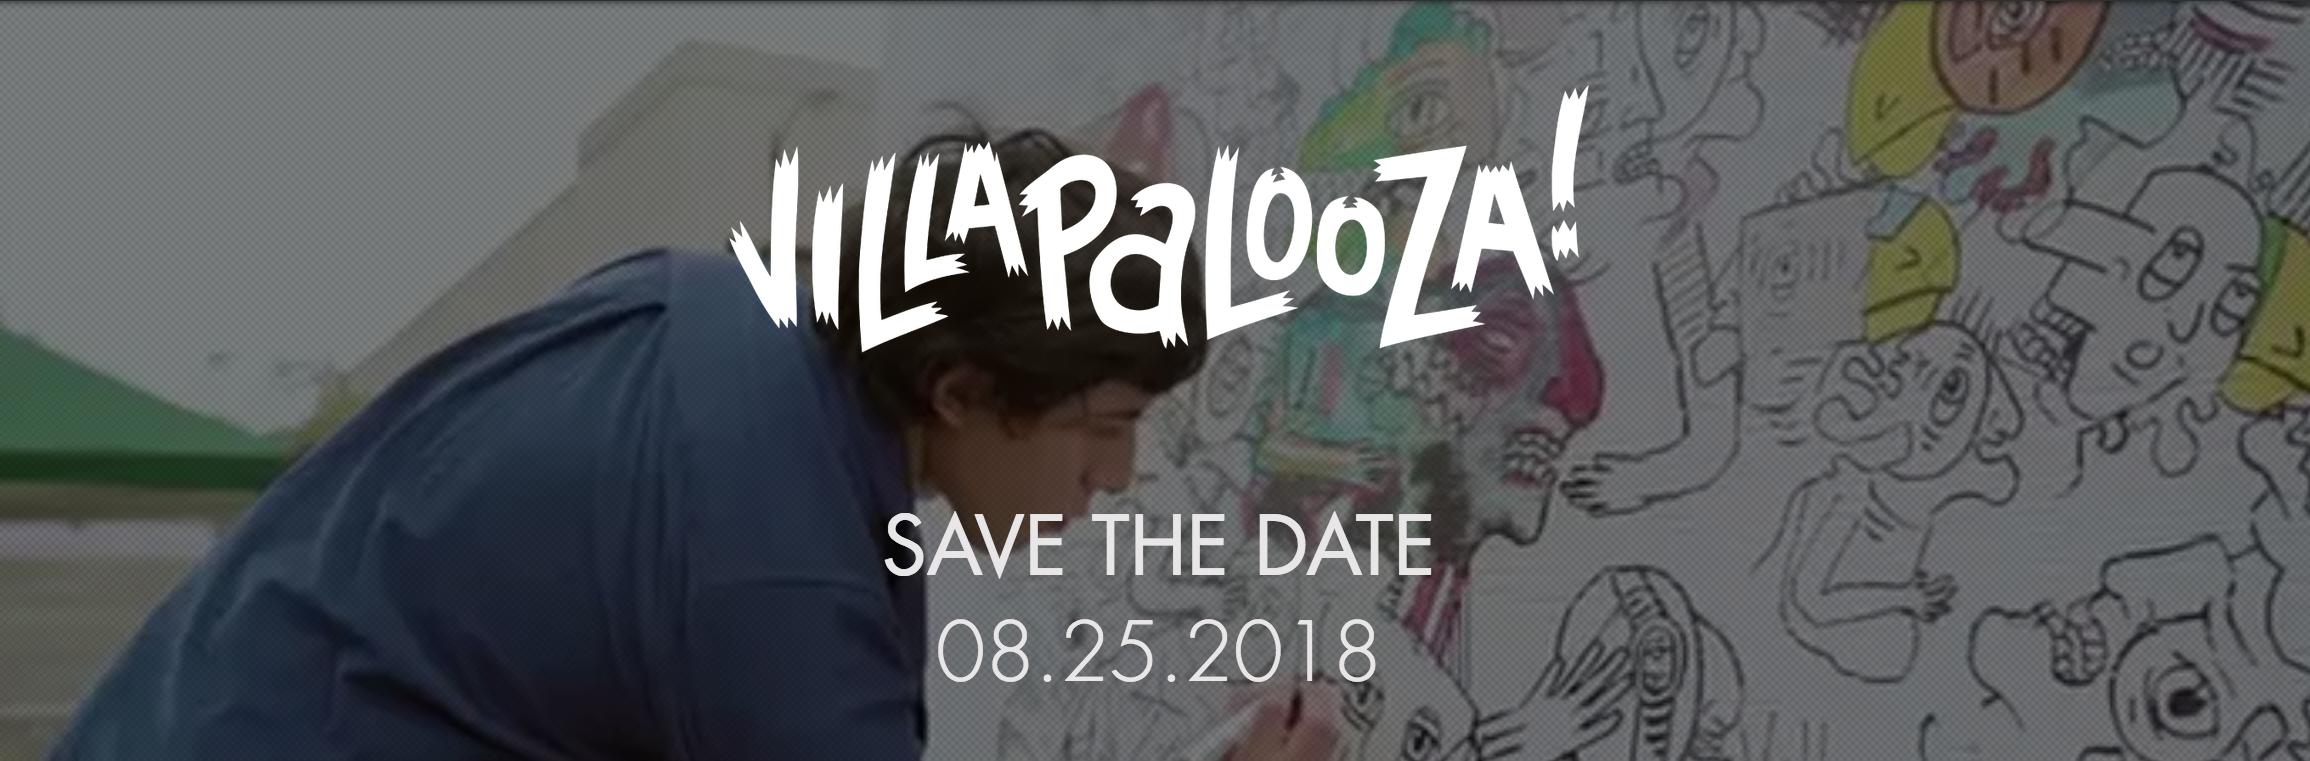 Villapalooza